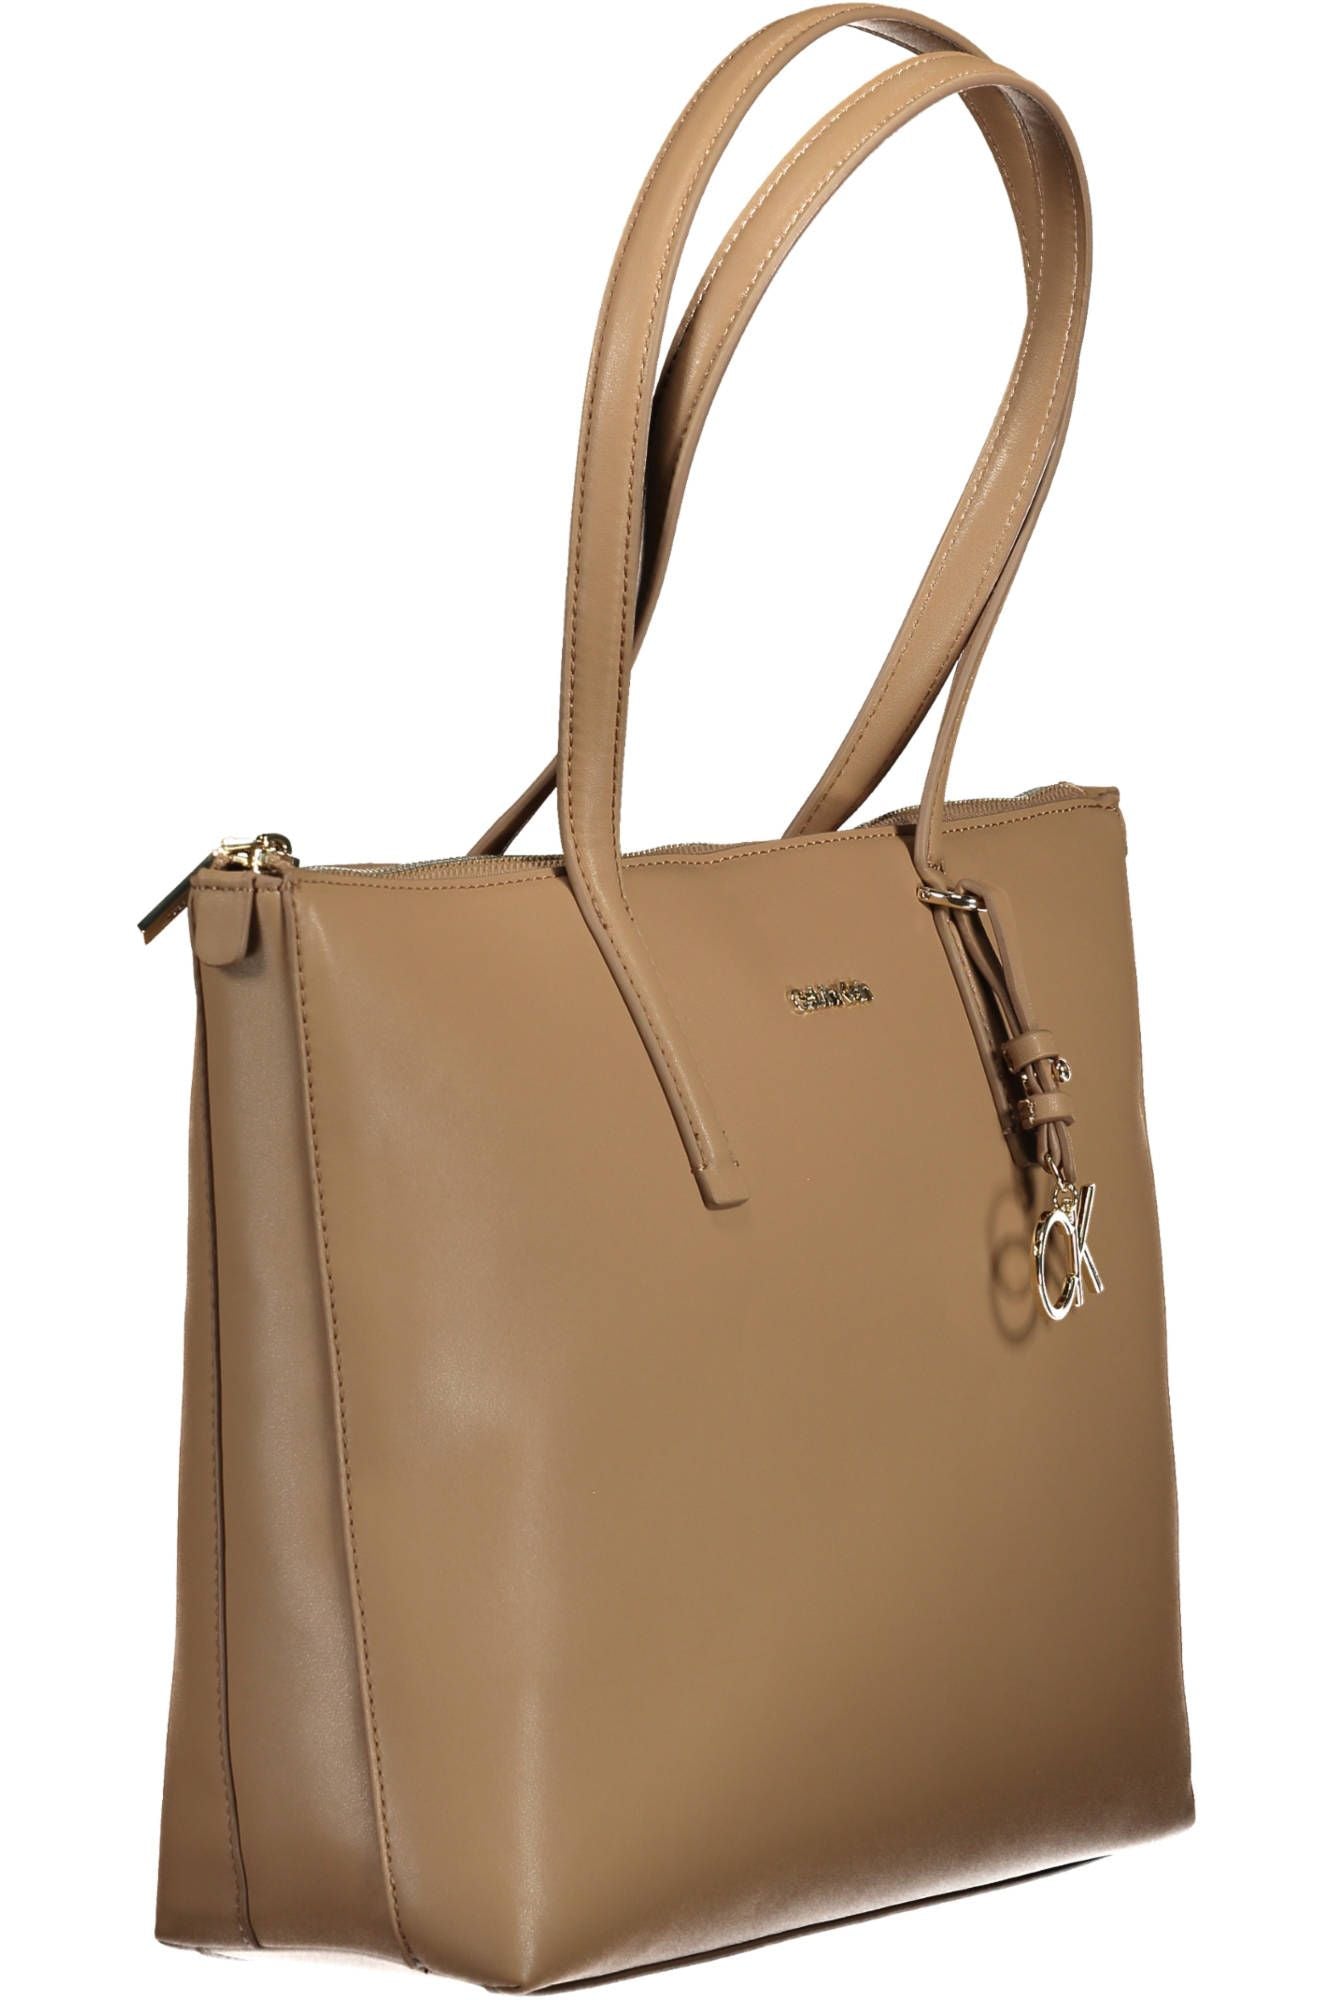 Elegant Beige Shoulder Bag with Chic Logo Detail